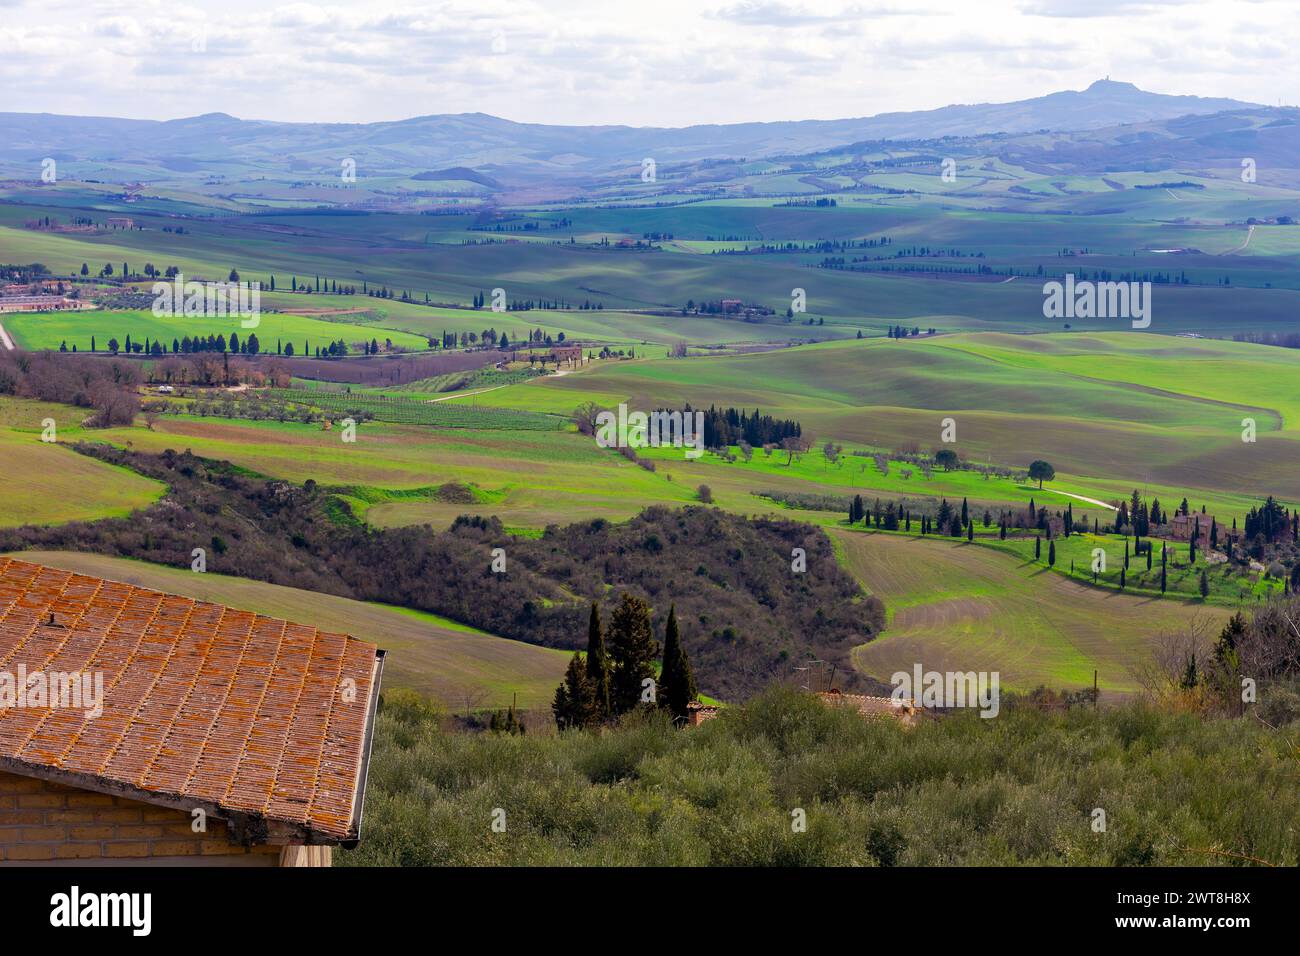 Wunderschöne Landschaft der grünen Hügel der Toskana im malerischen Val d' Orcia, in der Nähe von Siena und Florenz, mit Zypressen, endlosen Feldern und sanften Hügeln Stockfoto